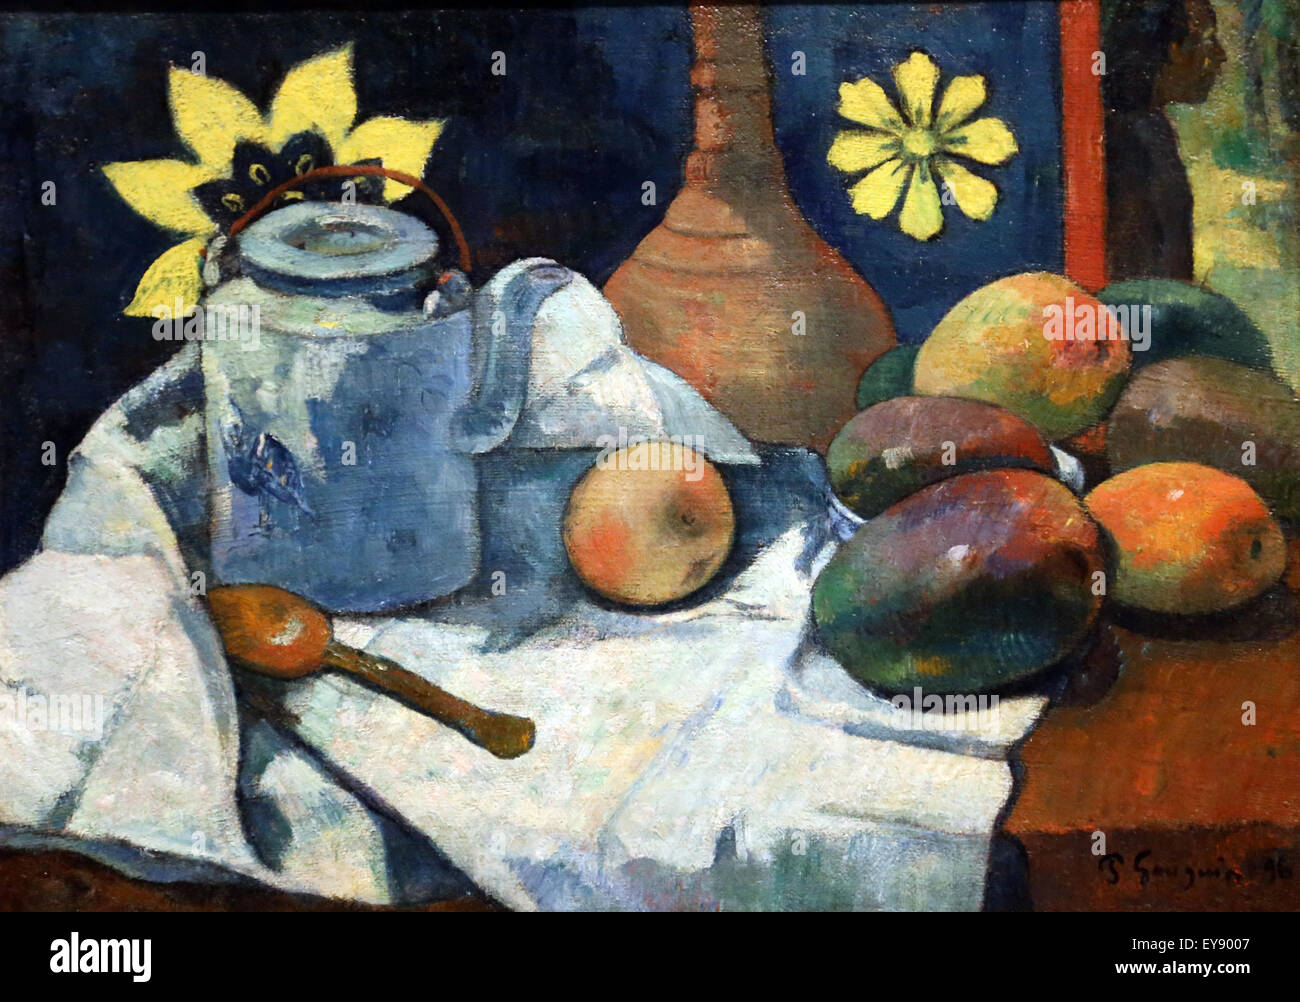 Paul Gauguin (1848-1903). Le peintre français. Nature morte avec fruits et Teapol, 1896. Huile sur toile. Metropolitan Museum of Art de New York. Banque D'Images